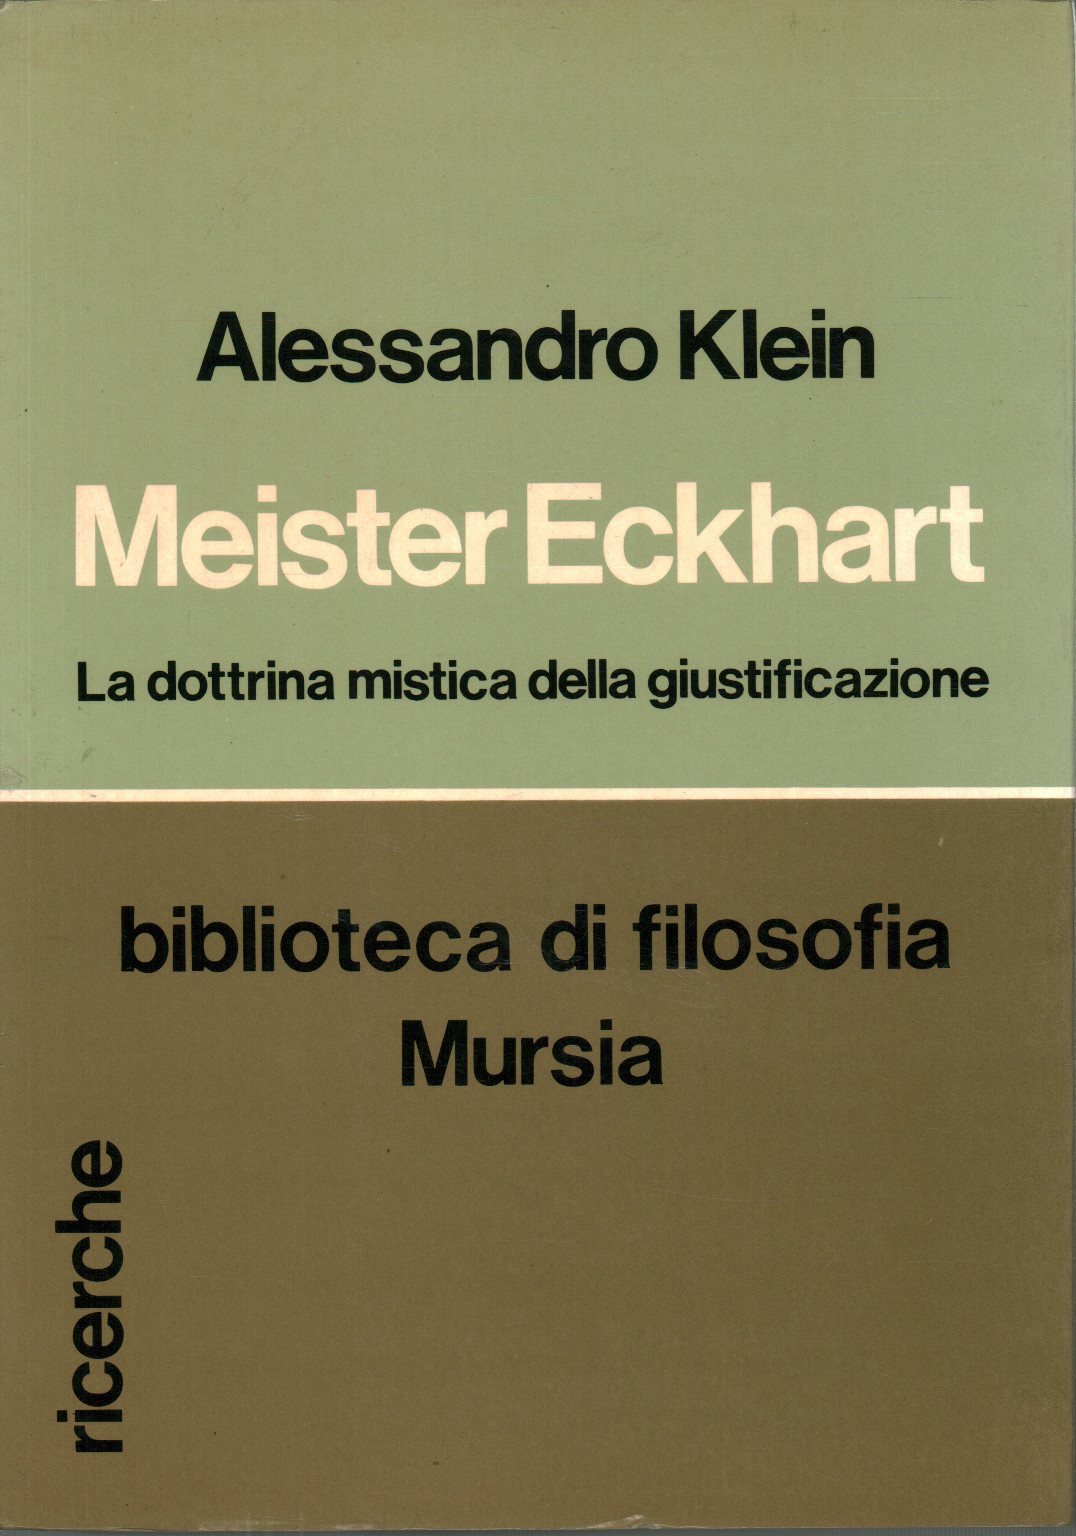 Meister Eckhart, s.a.